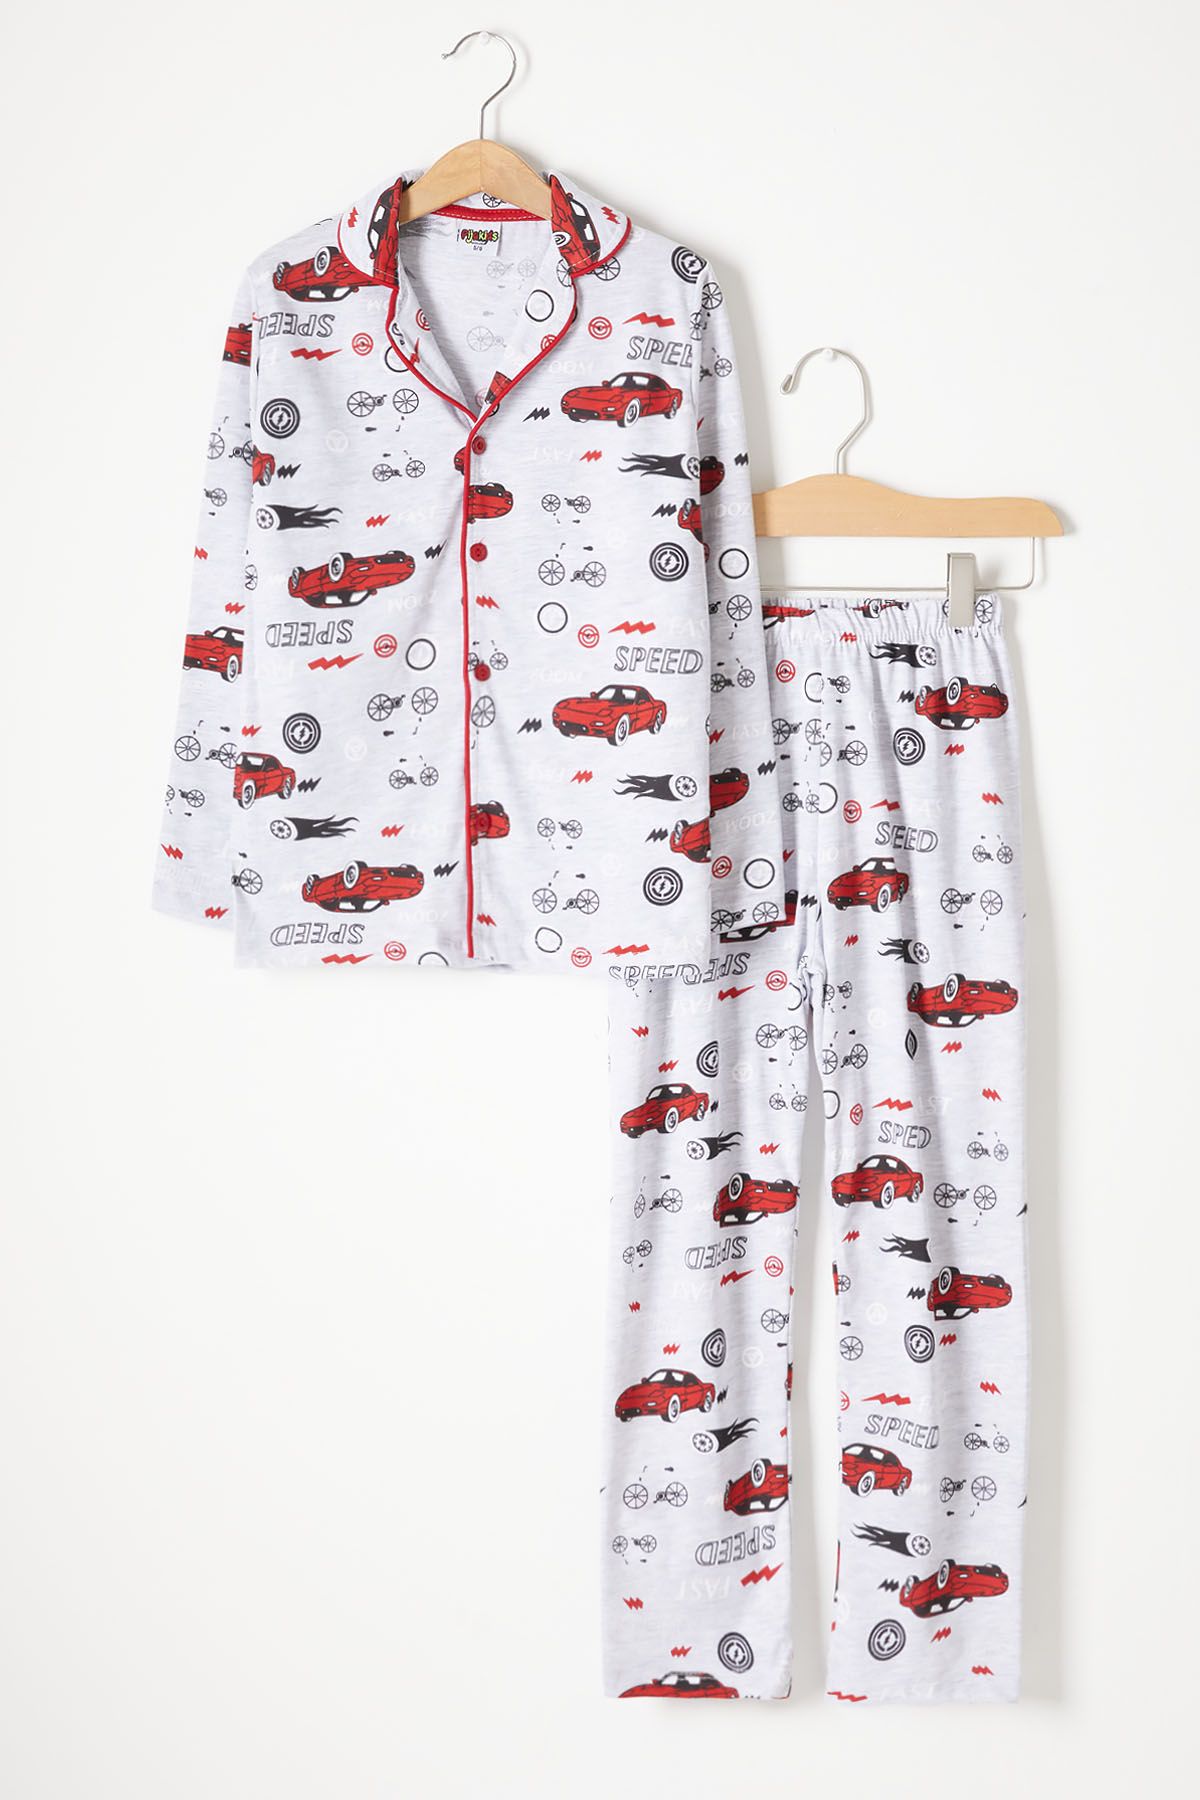 Cansın Mini Araba Desenli Erkek Çocuk Pijama Takımı 16328